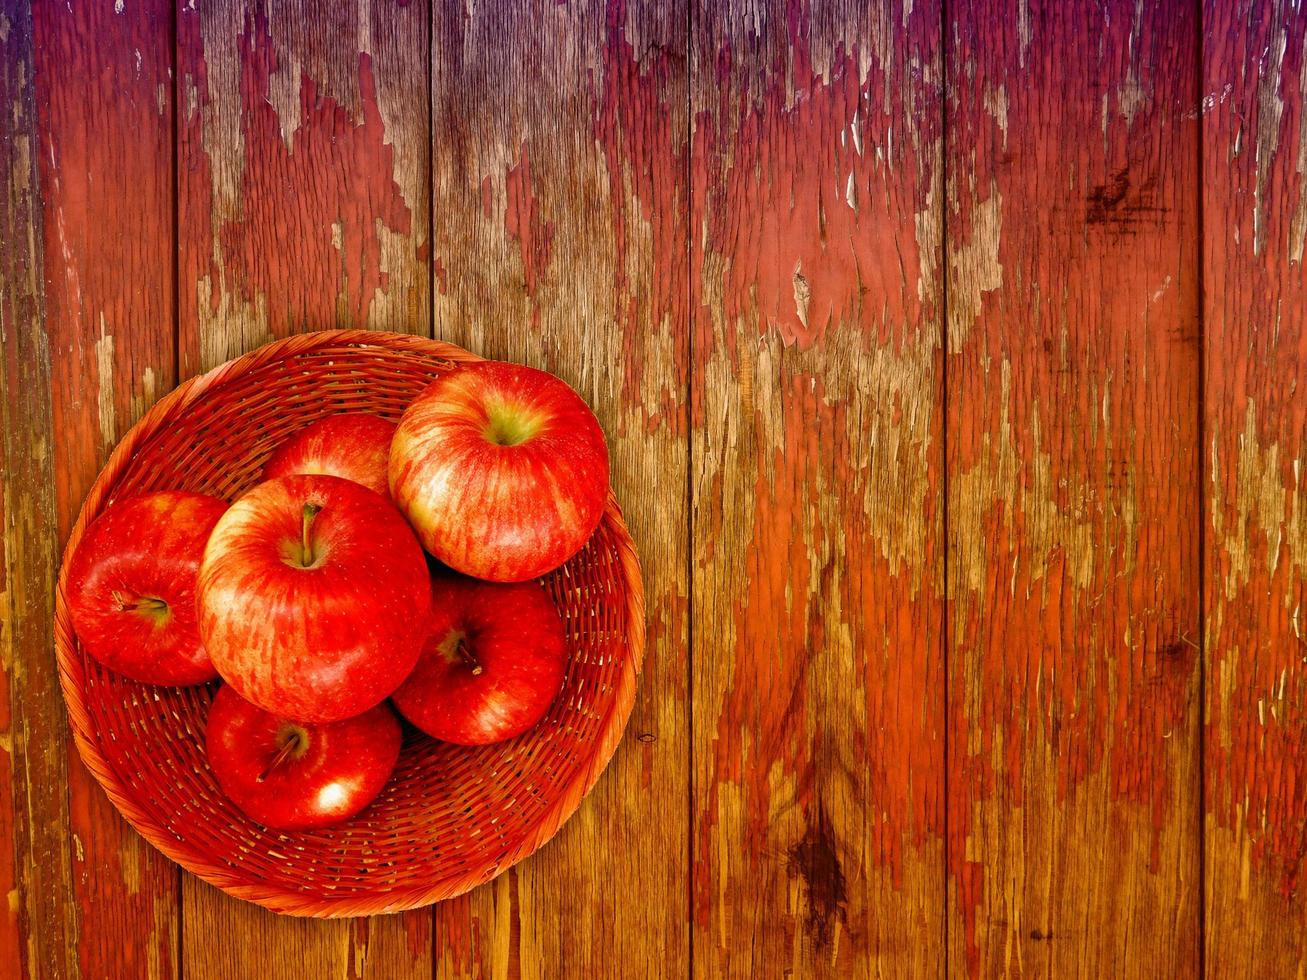 äpplen på träbakgrunden foto